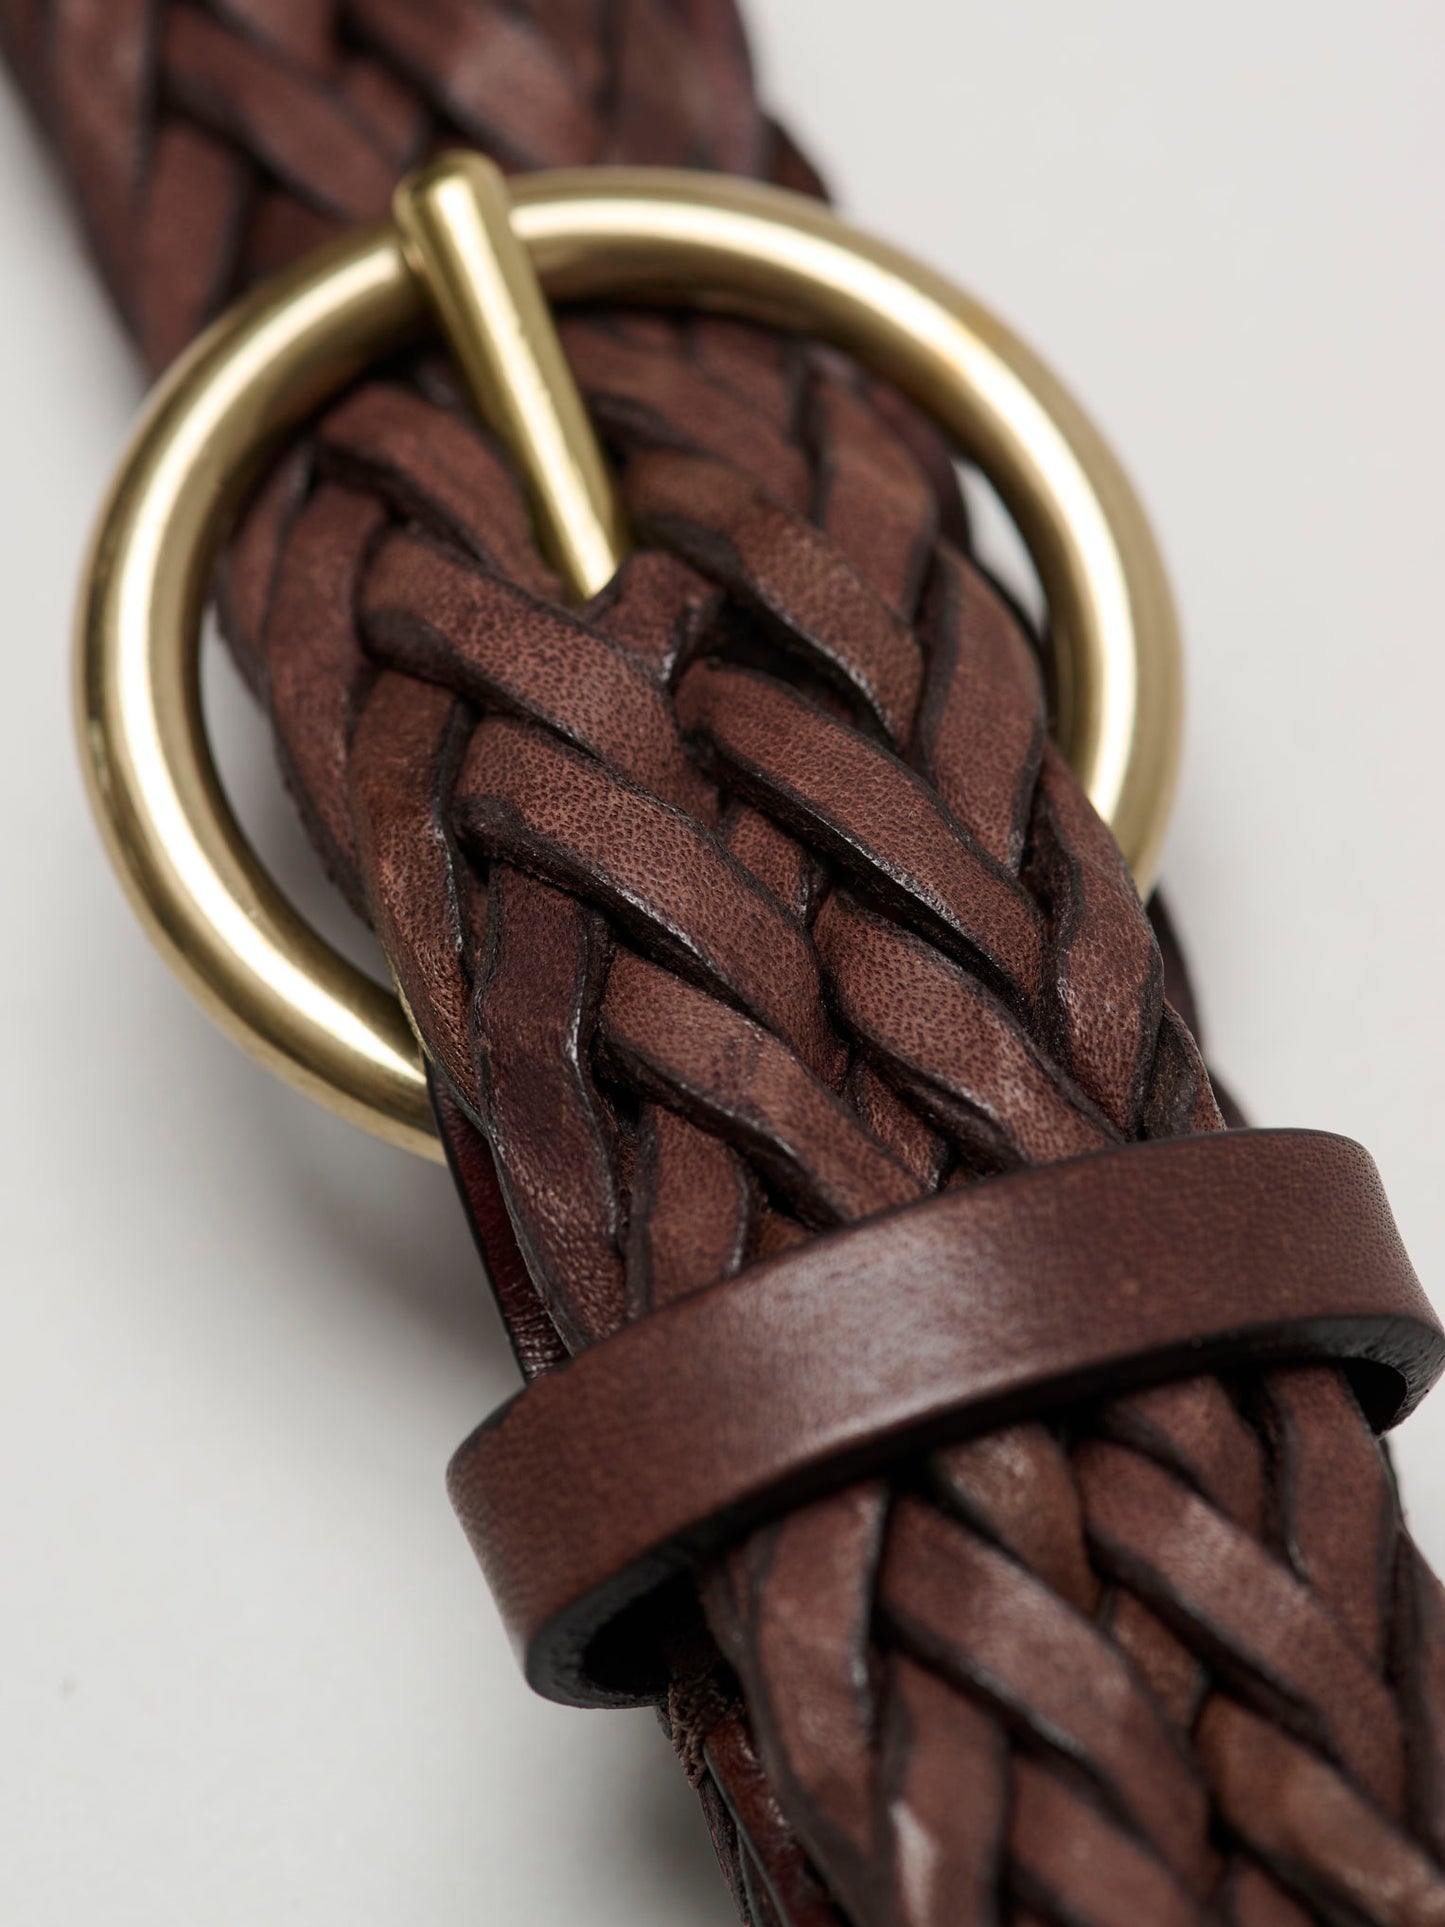 Round Buckle Braided Leather Belt, Dark Brown